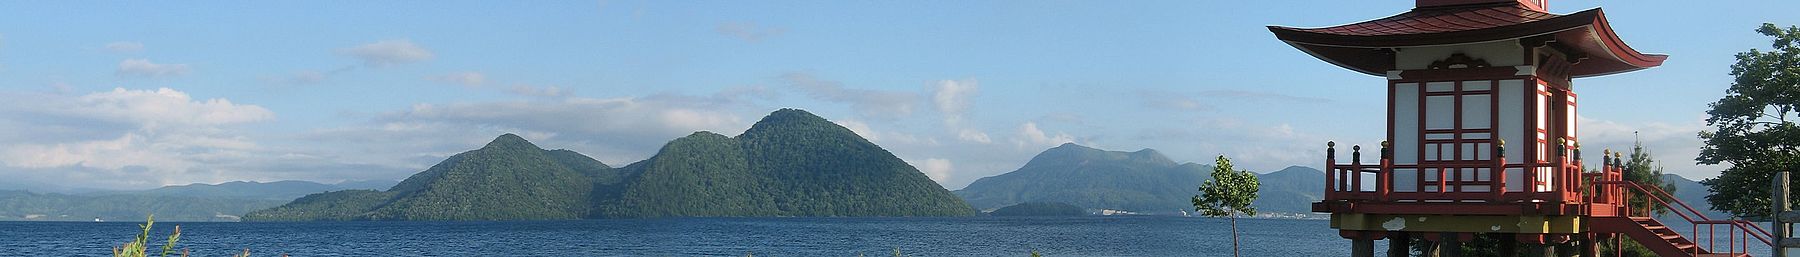 Hokkaido Banner Toyako lake.jpg